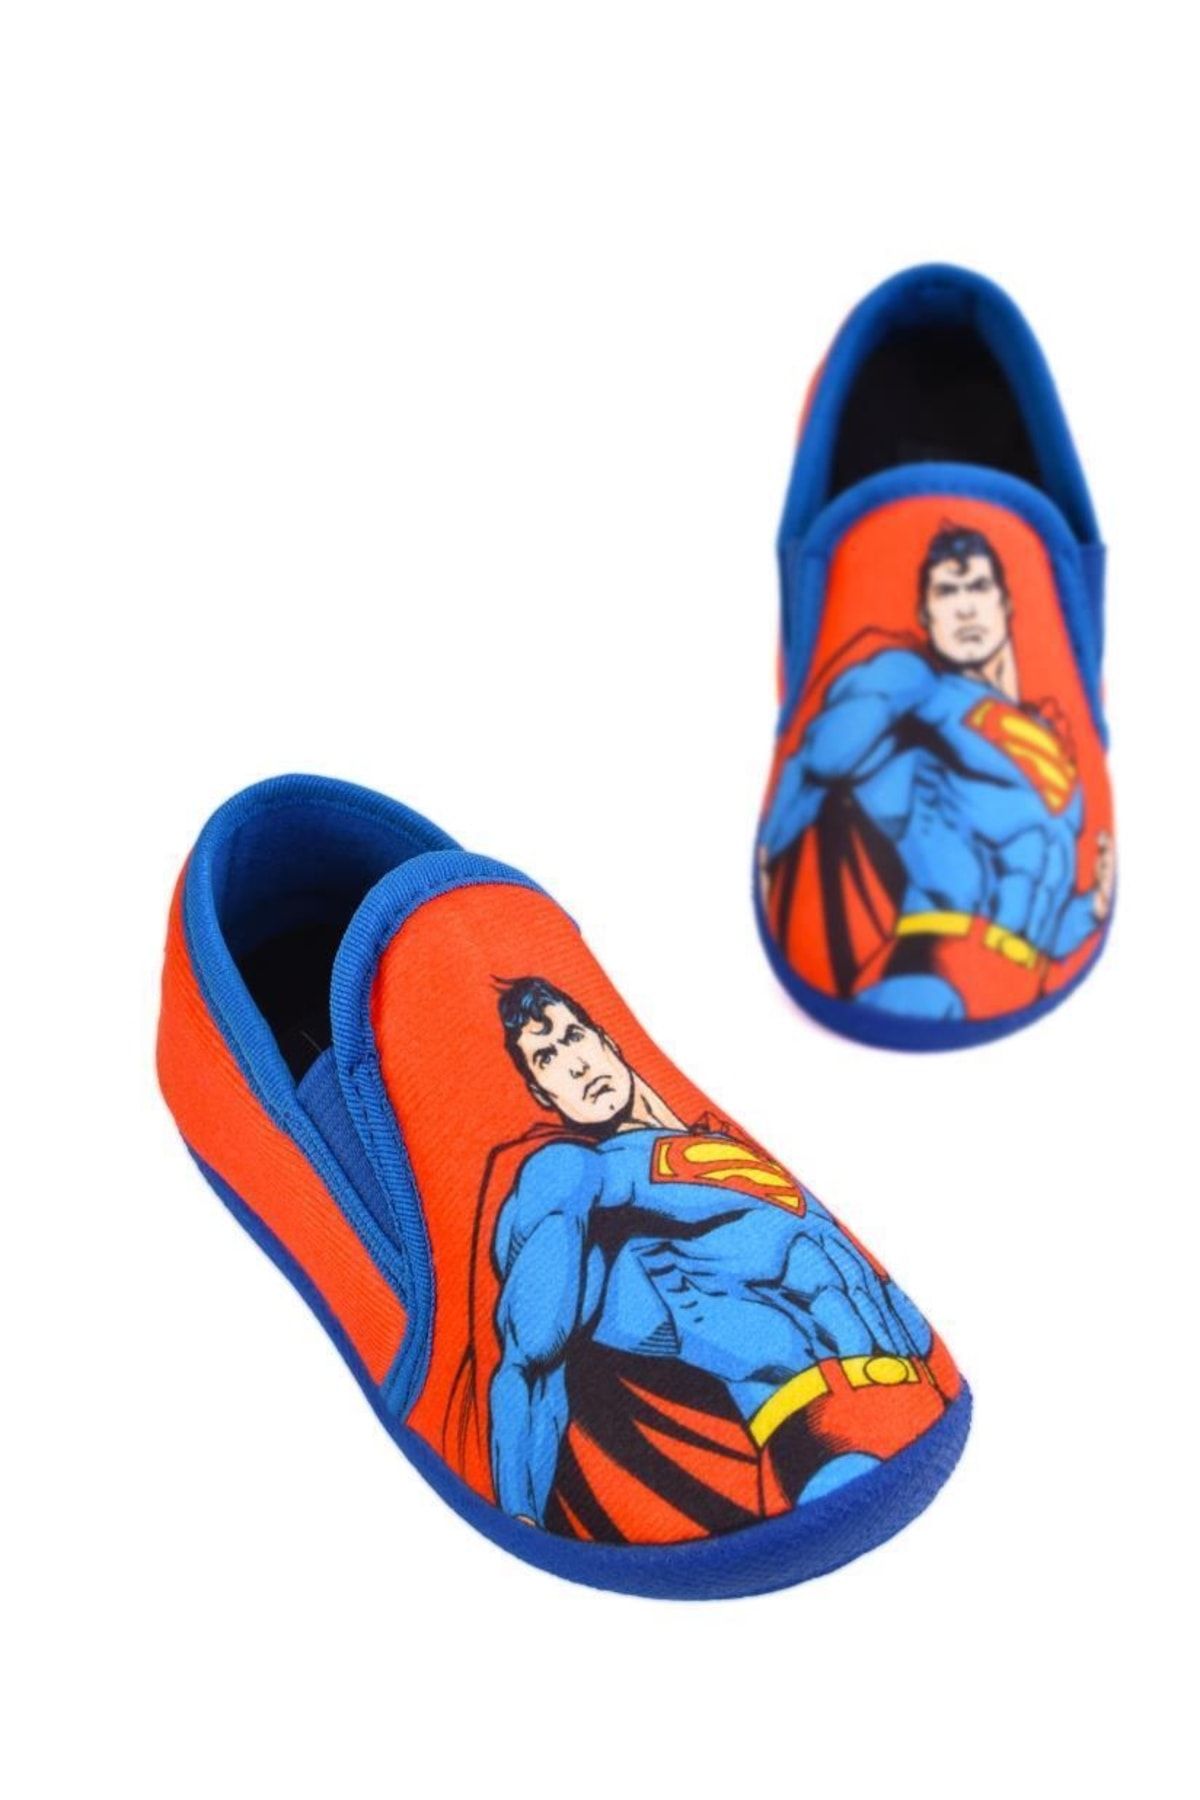 Superman Erkek Çocuk Anaokulu Ayakkabısı Ellaboni Panduf